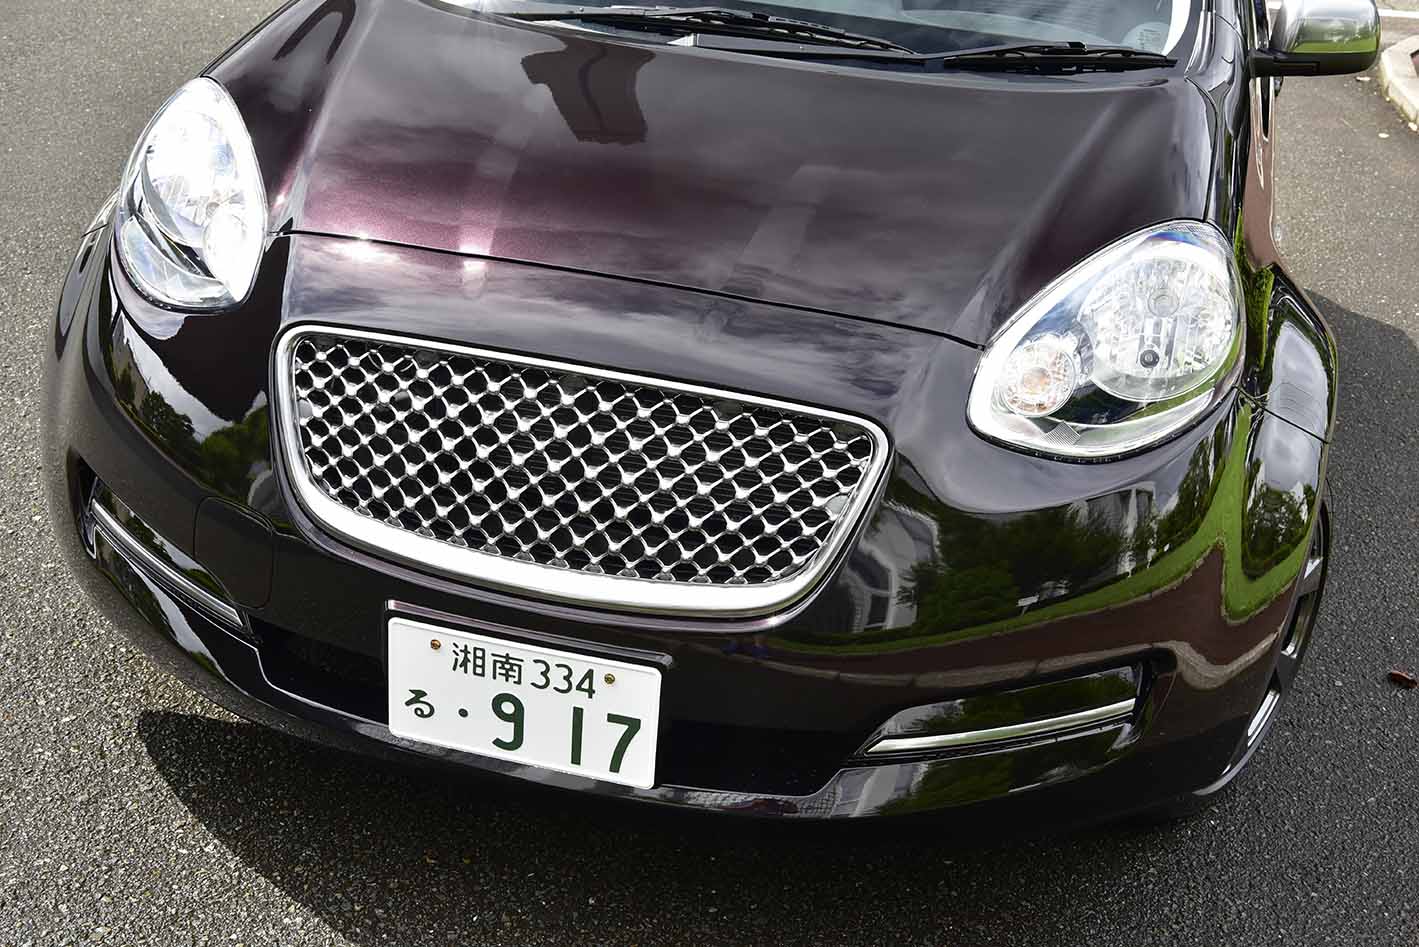 かつて高性能の象徴だった フェンダー が特徴的な日本車 10選 ベストカーweb 自動車情報サイト 新車 中古車 Carview